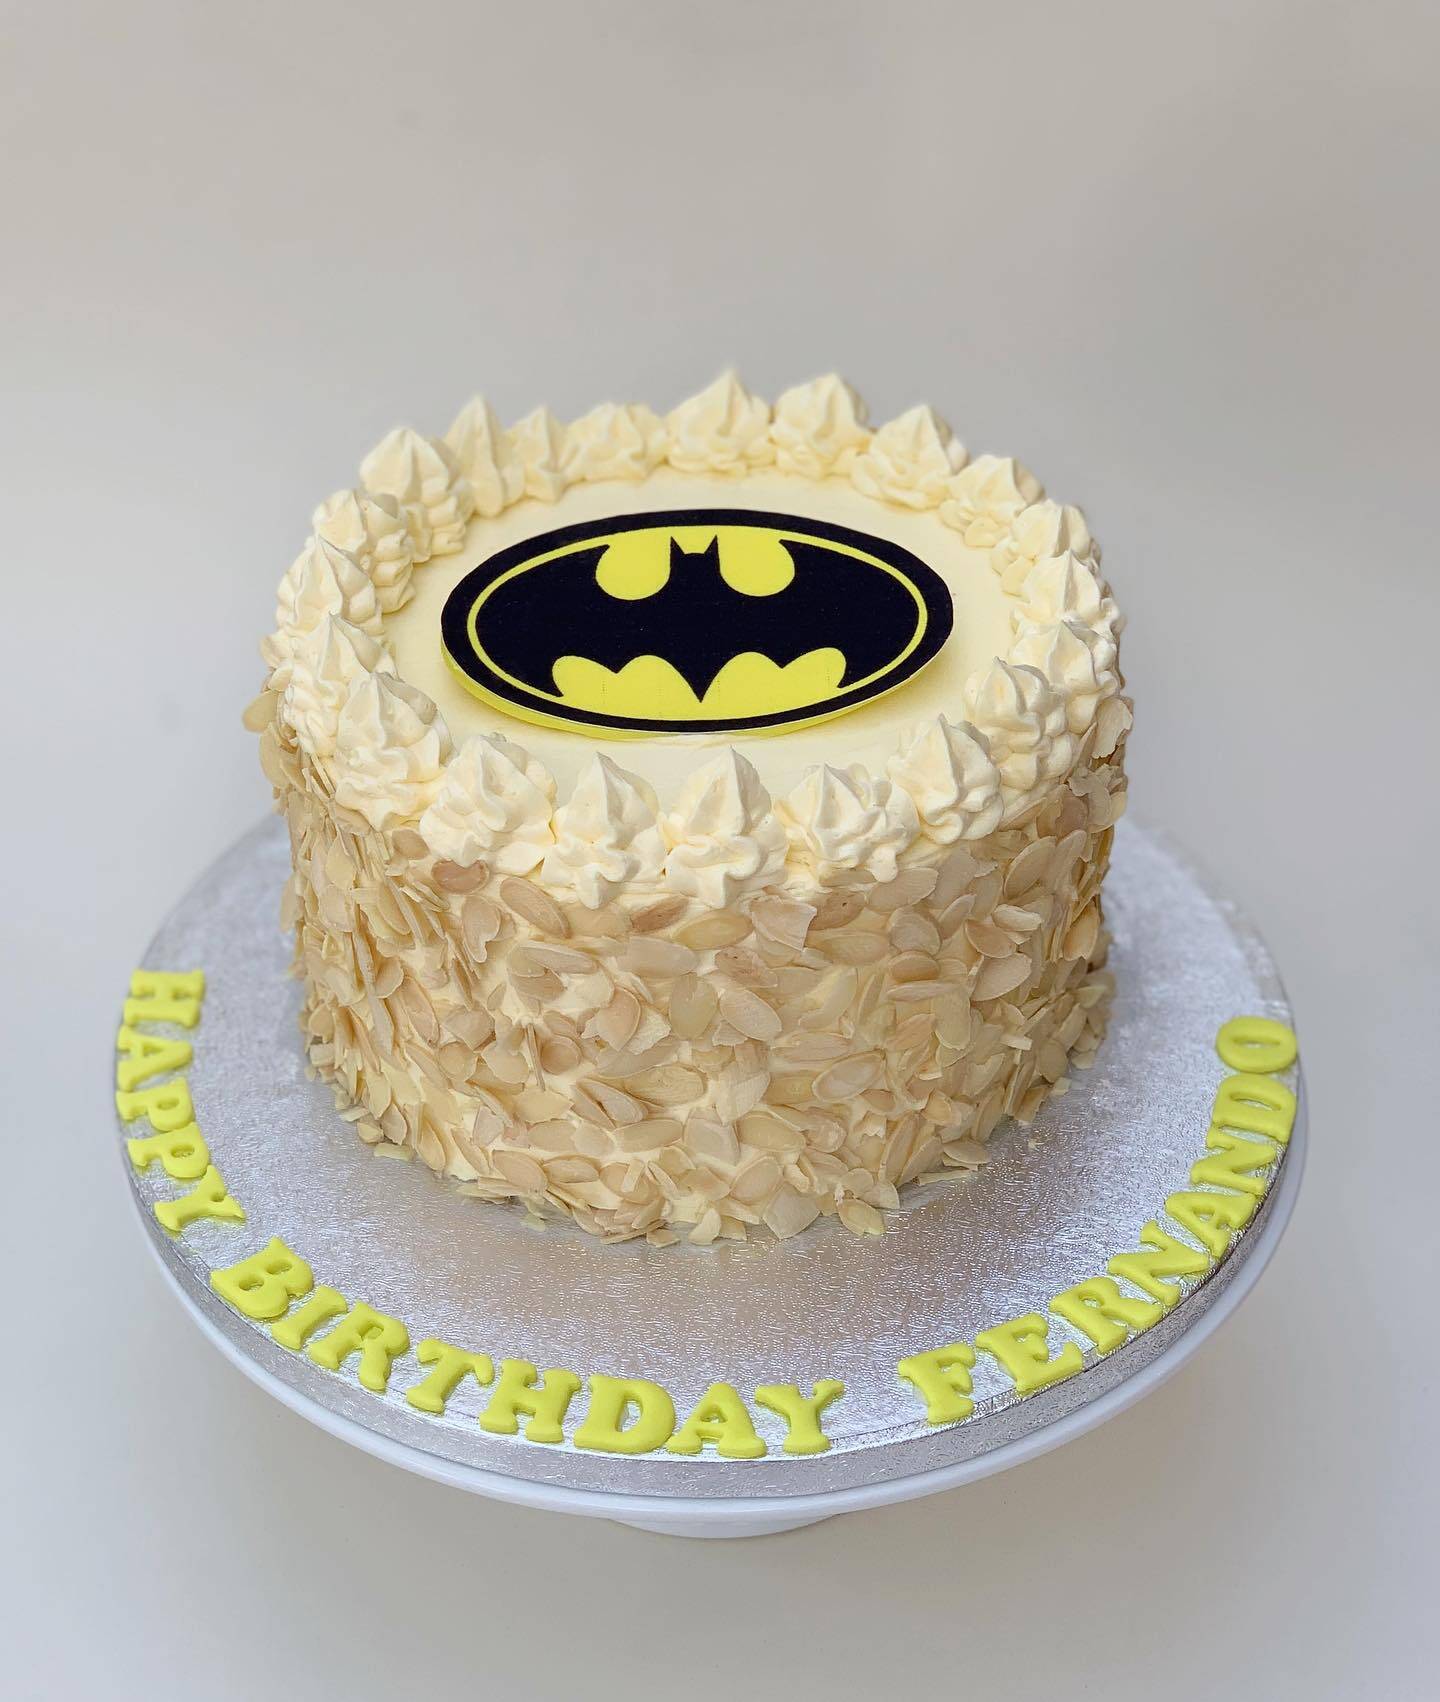 Batman Cake Pow! Take That